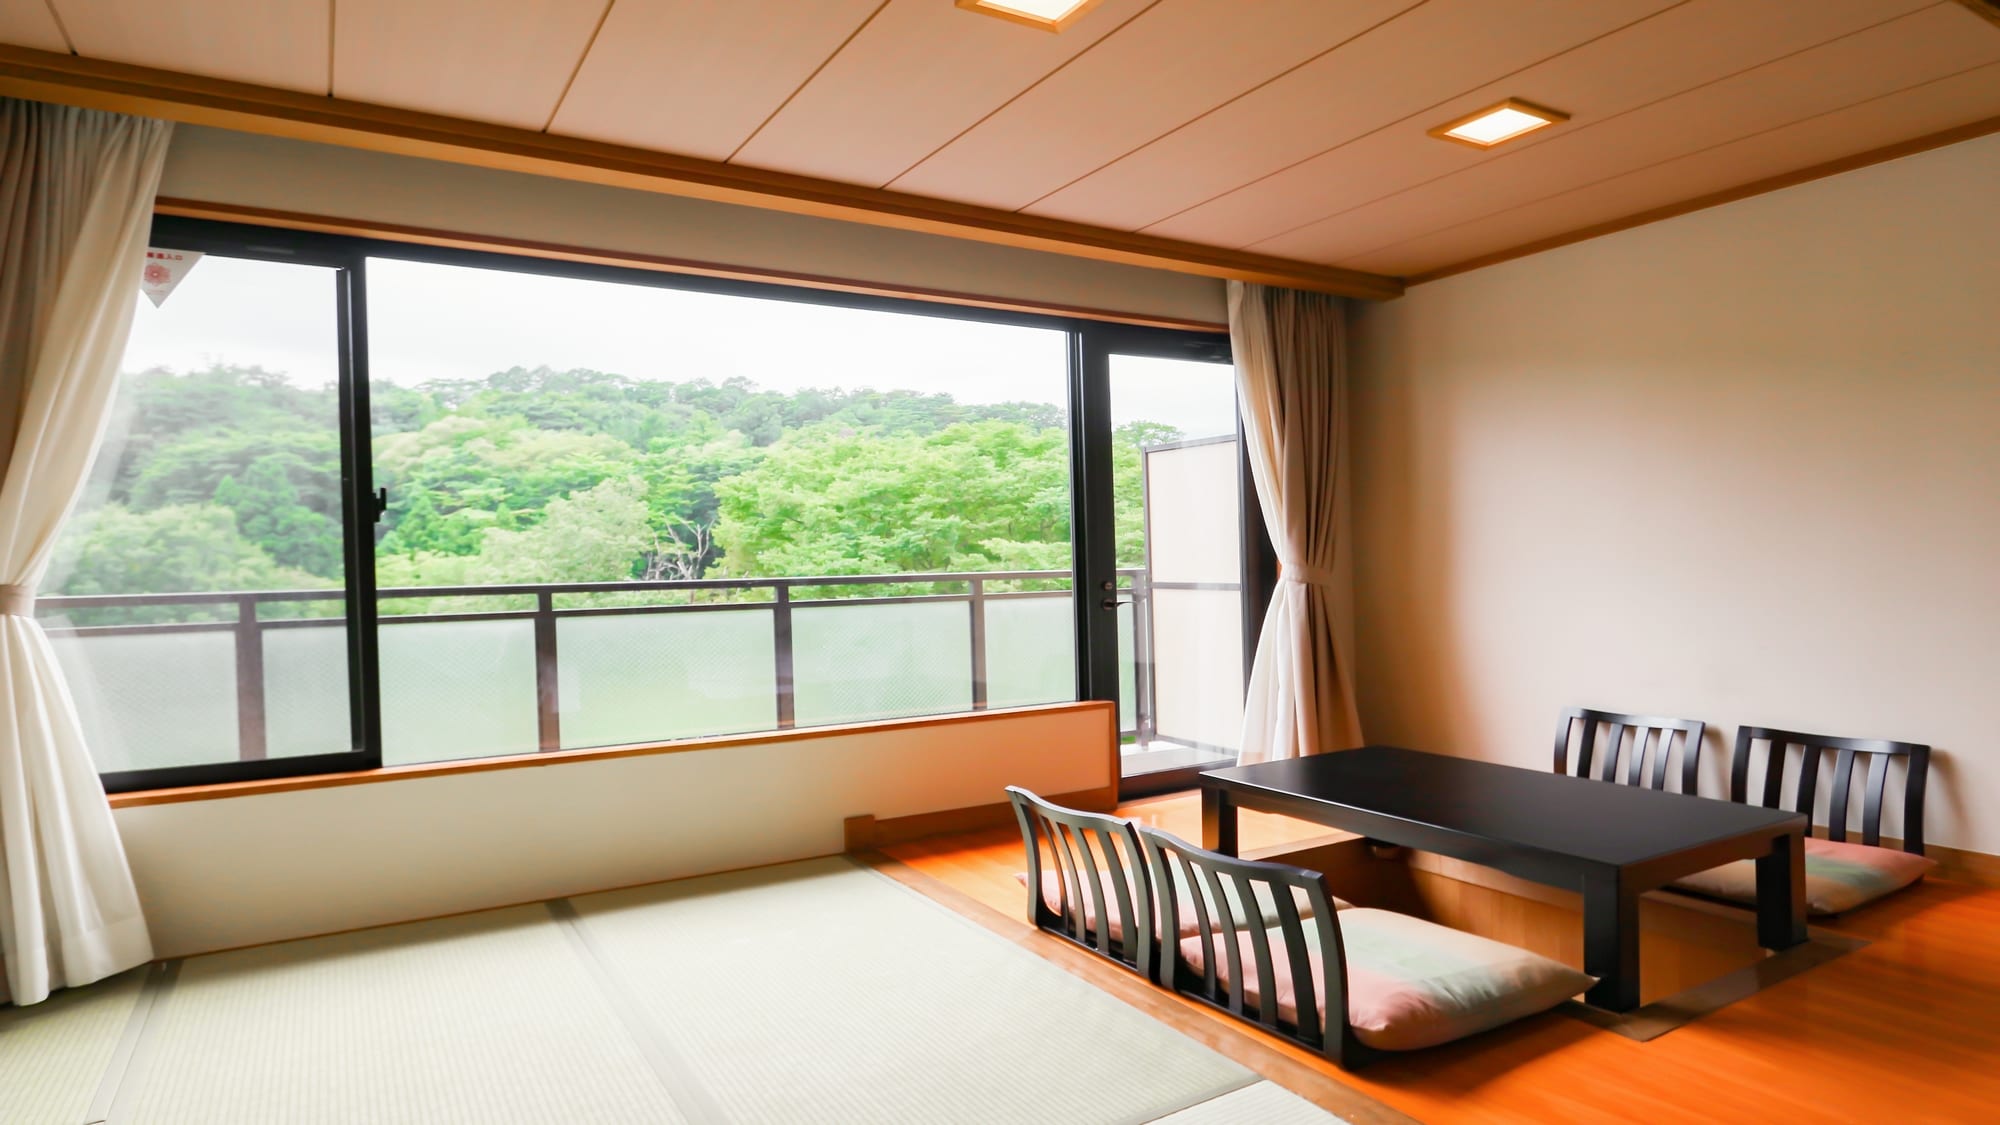 [ปลอดบุหรี่] ห้องพักแบบญี่ปุ่นและตะวันตก อาคารฝั่งตะวันตก เสื่อทาทามิ 10 ผืน + เสื่อทาทามิ 4.5 ผืนแฝด (มีอ่างอาบน้ำและห้องสุขา)